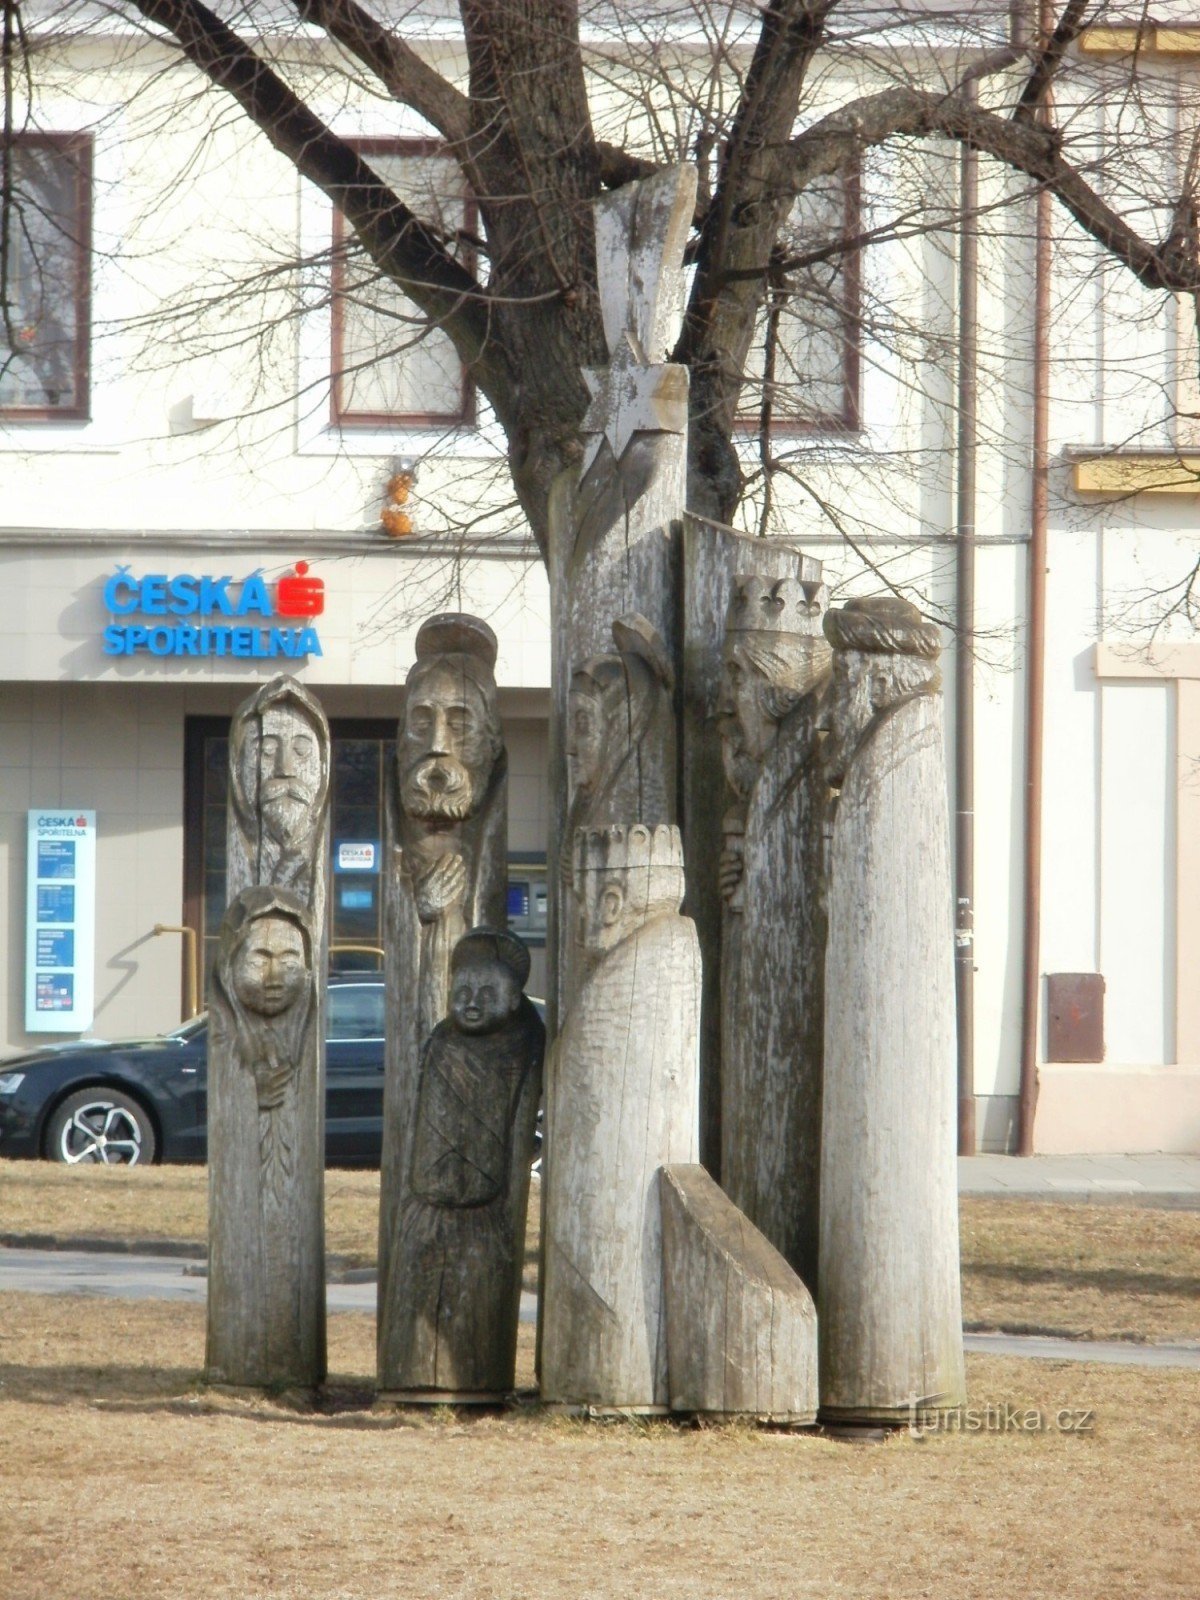 Třebechovice pod Oreb - 广场上的木制耶稣诞生场景